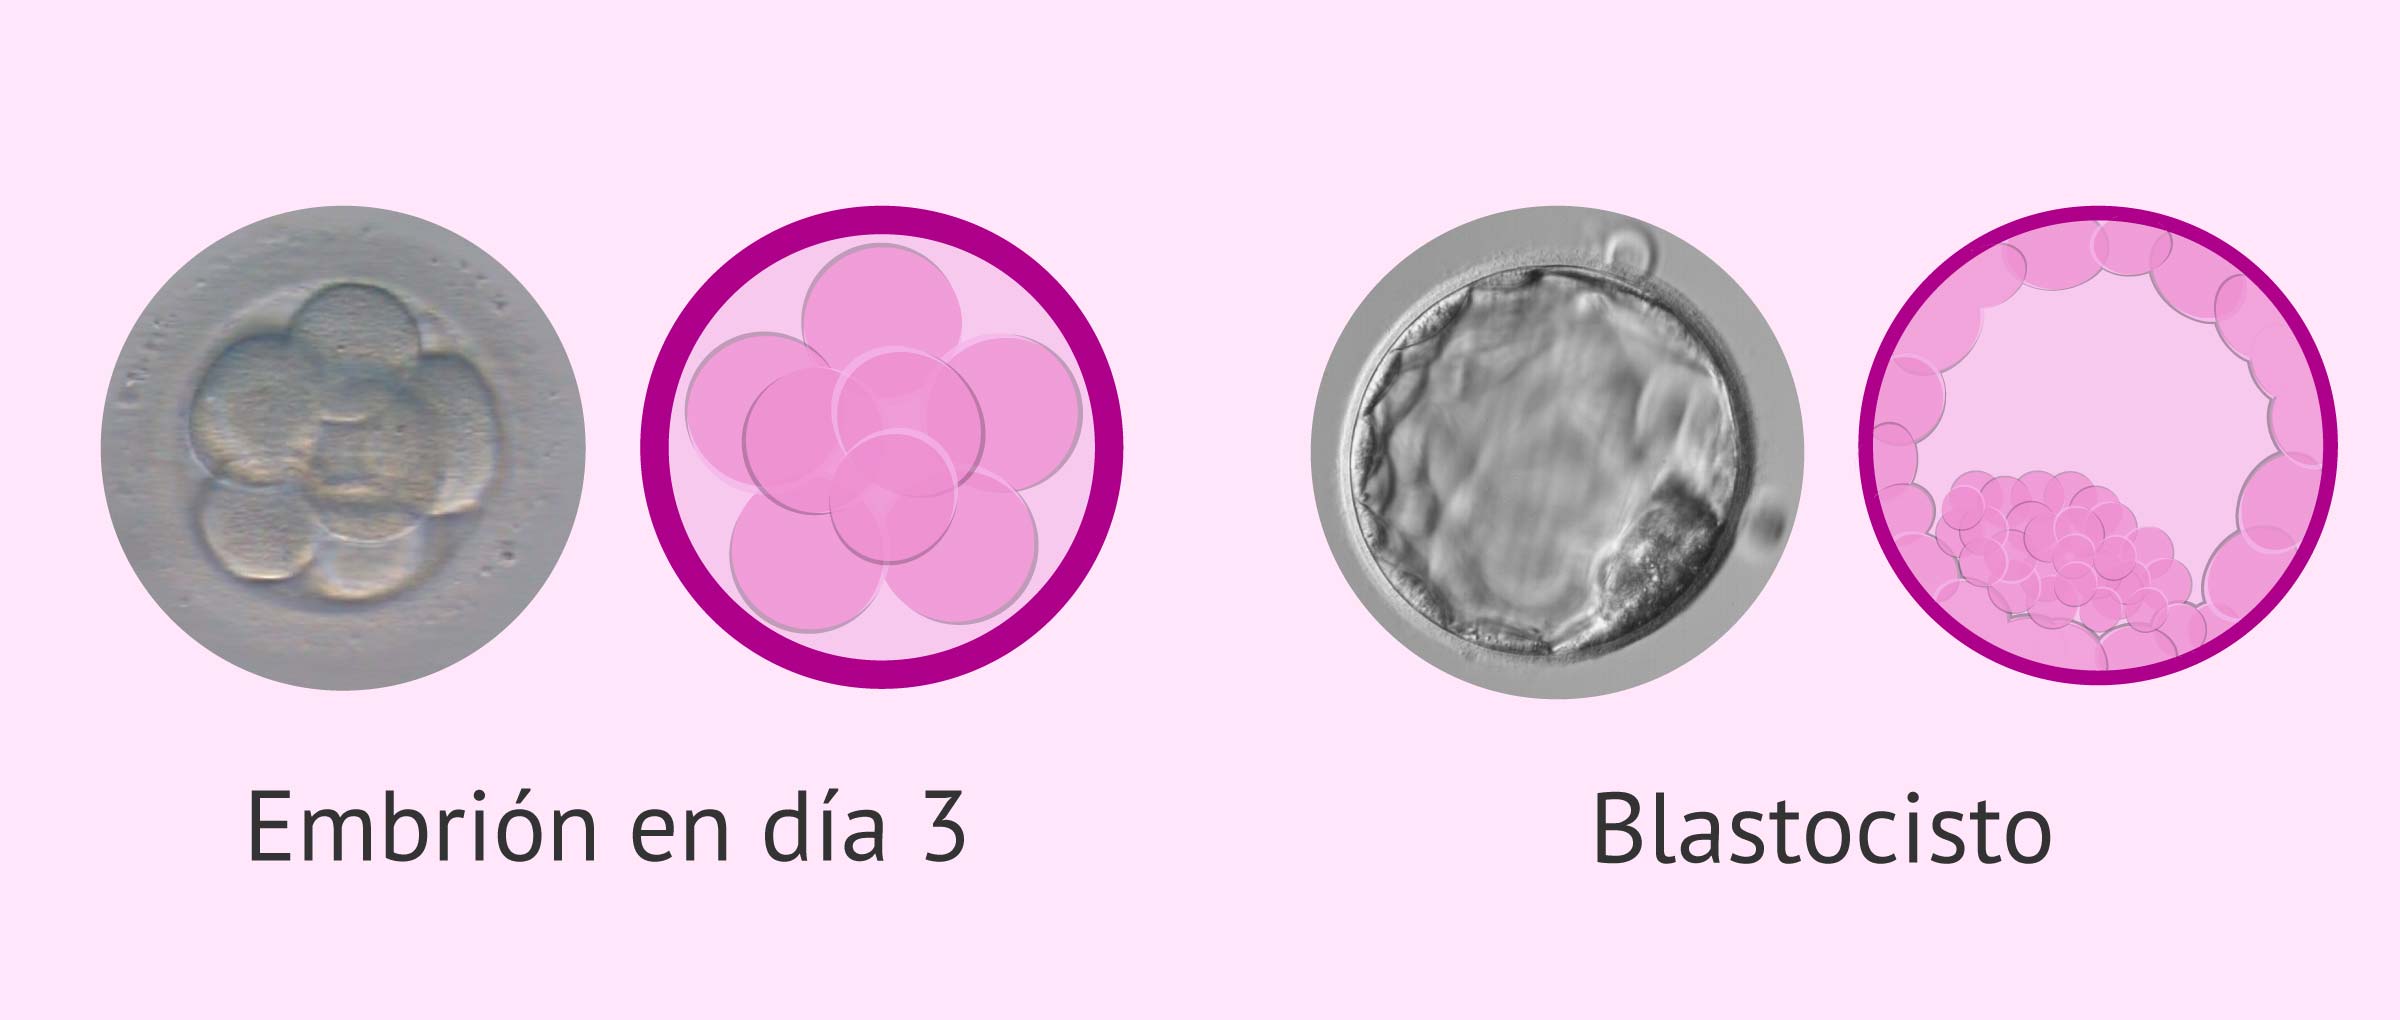 Transferir embriones en día 3 o blastocistos